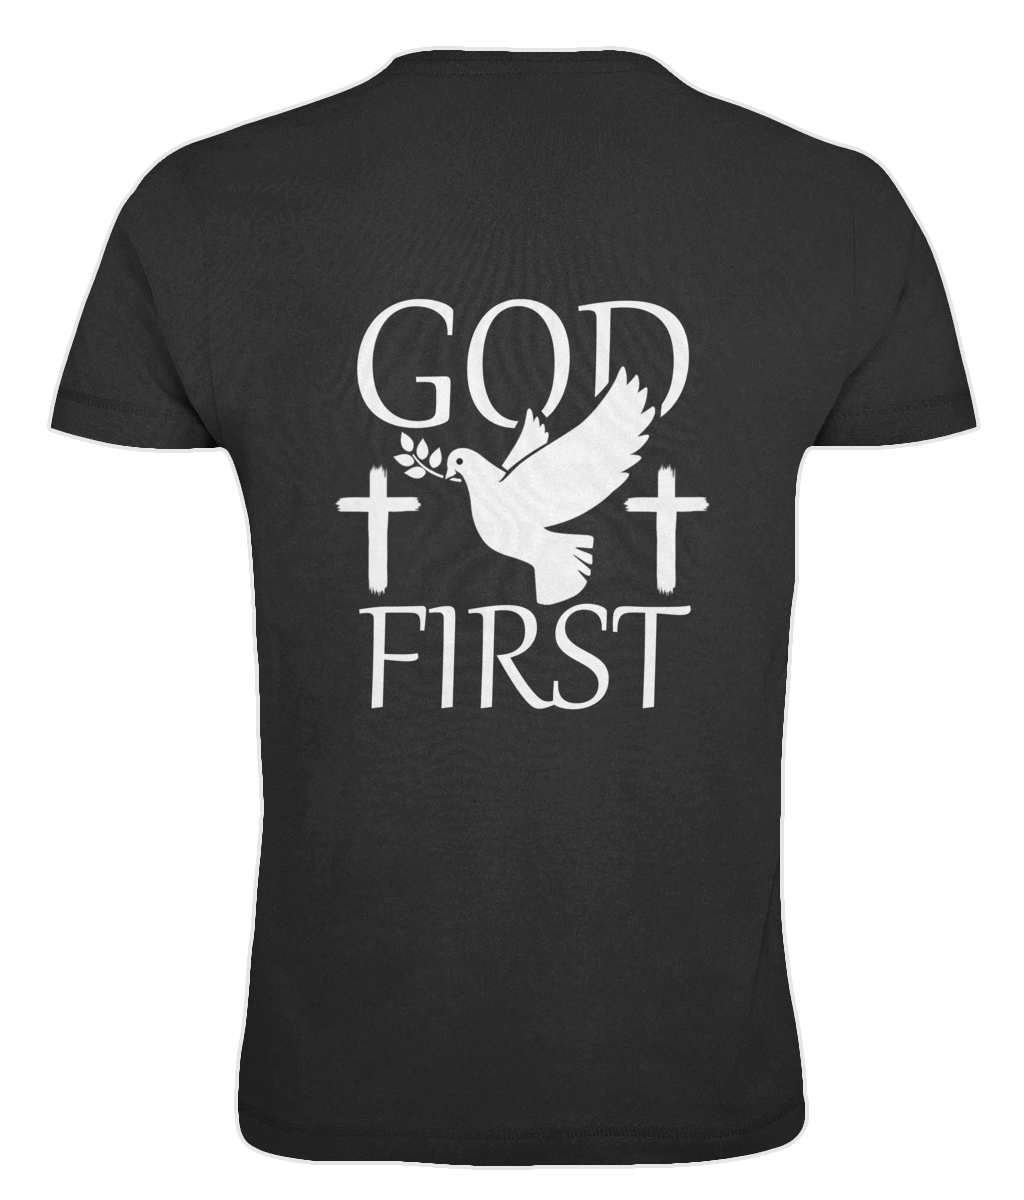 "God First" - Oversized T-shirt